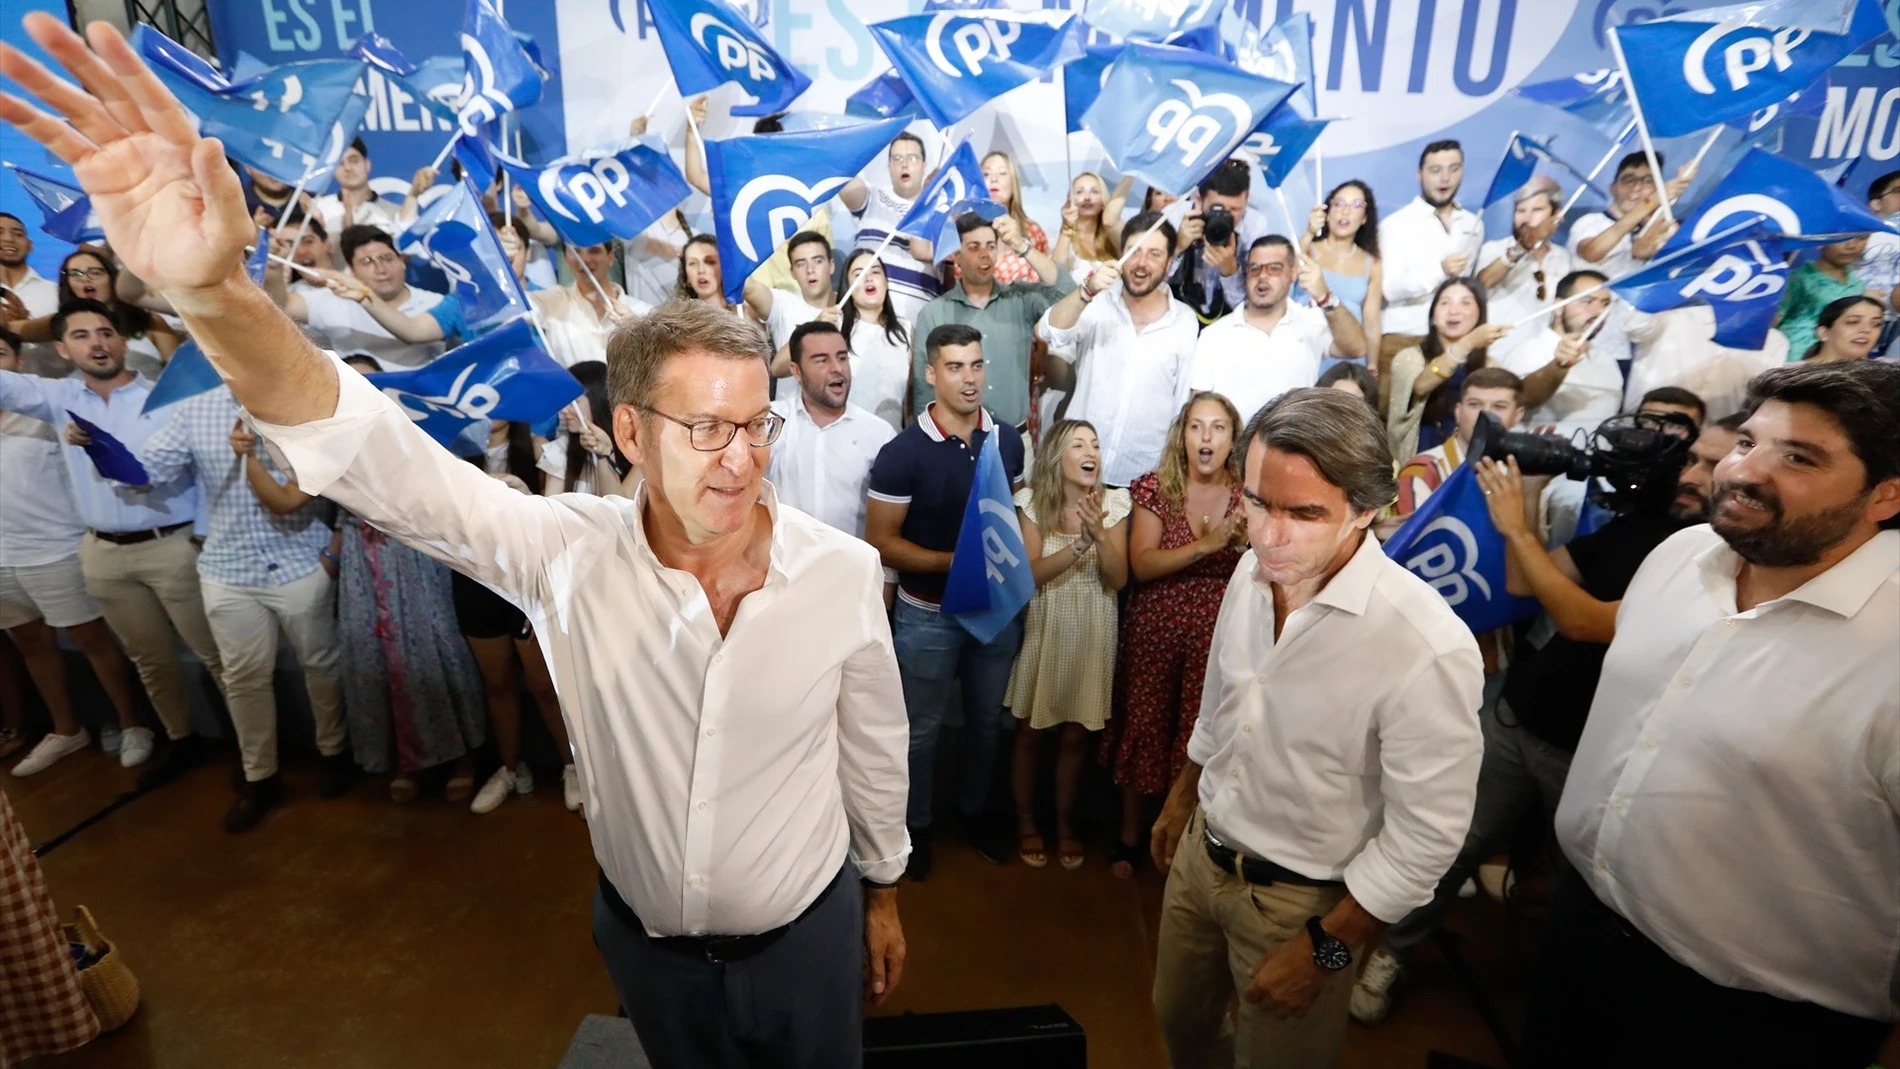 Las peñas del Real Oviedo dicen 'basta